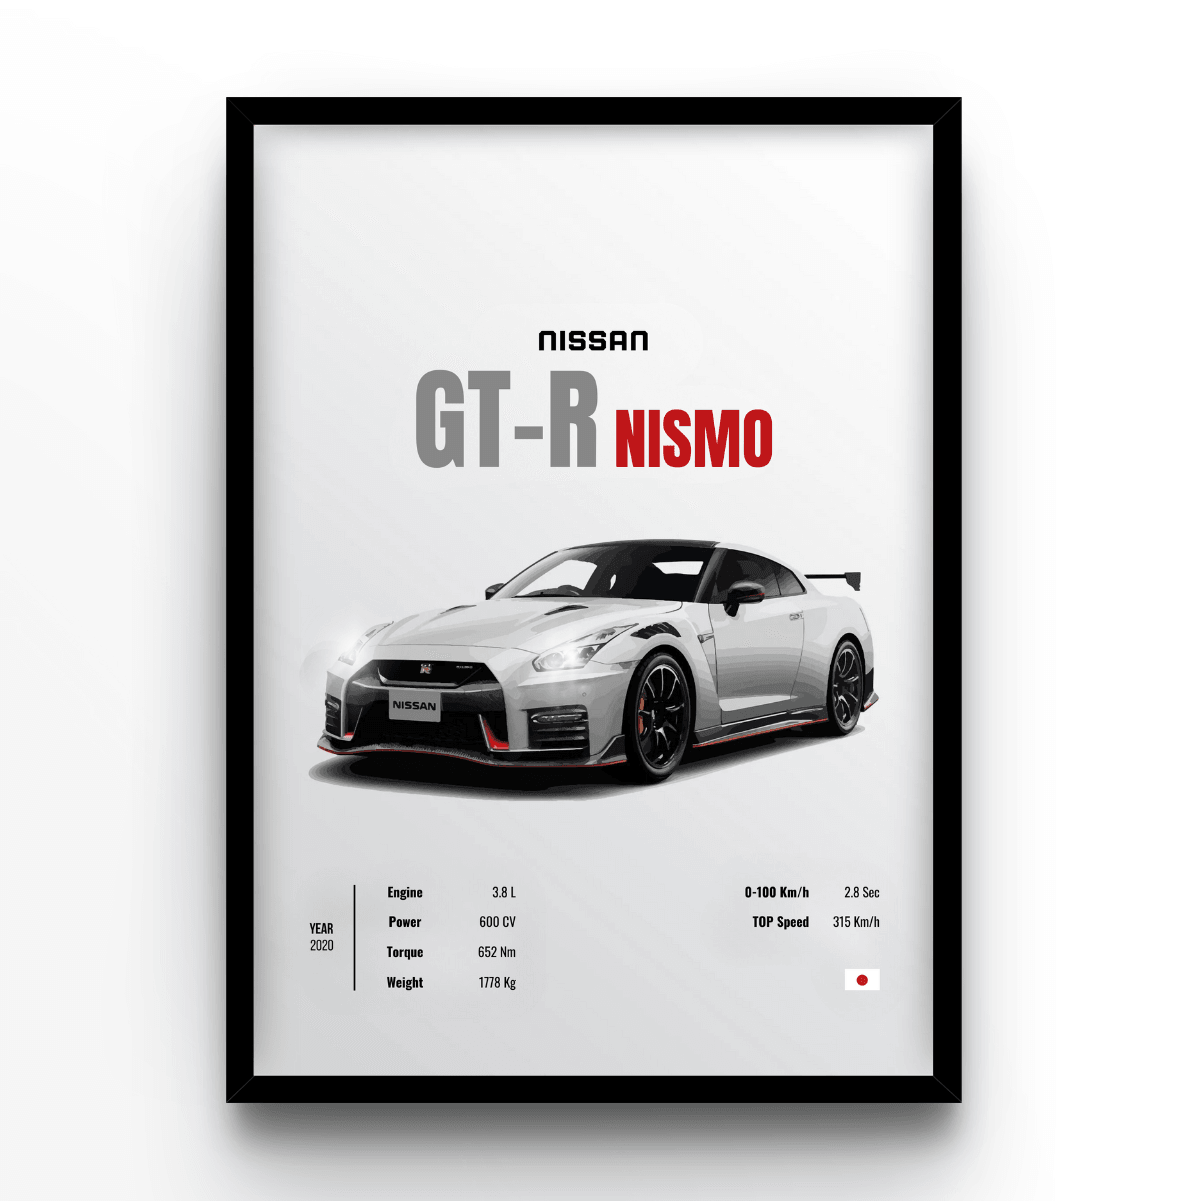 Nissan GT-R Nismo - A4, A3, A2 Posters Base - Poster Print Shop / Art Prints / PostersBase